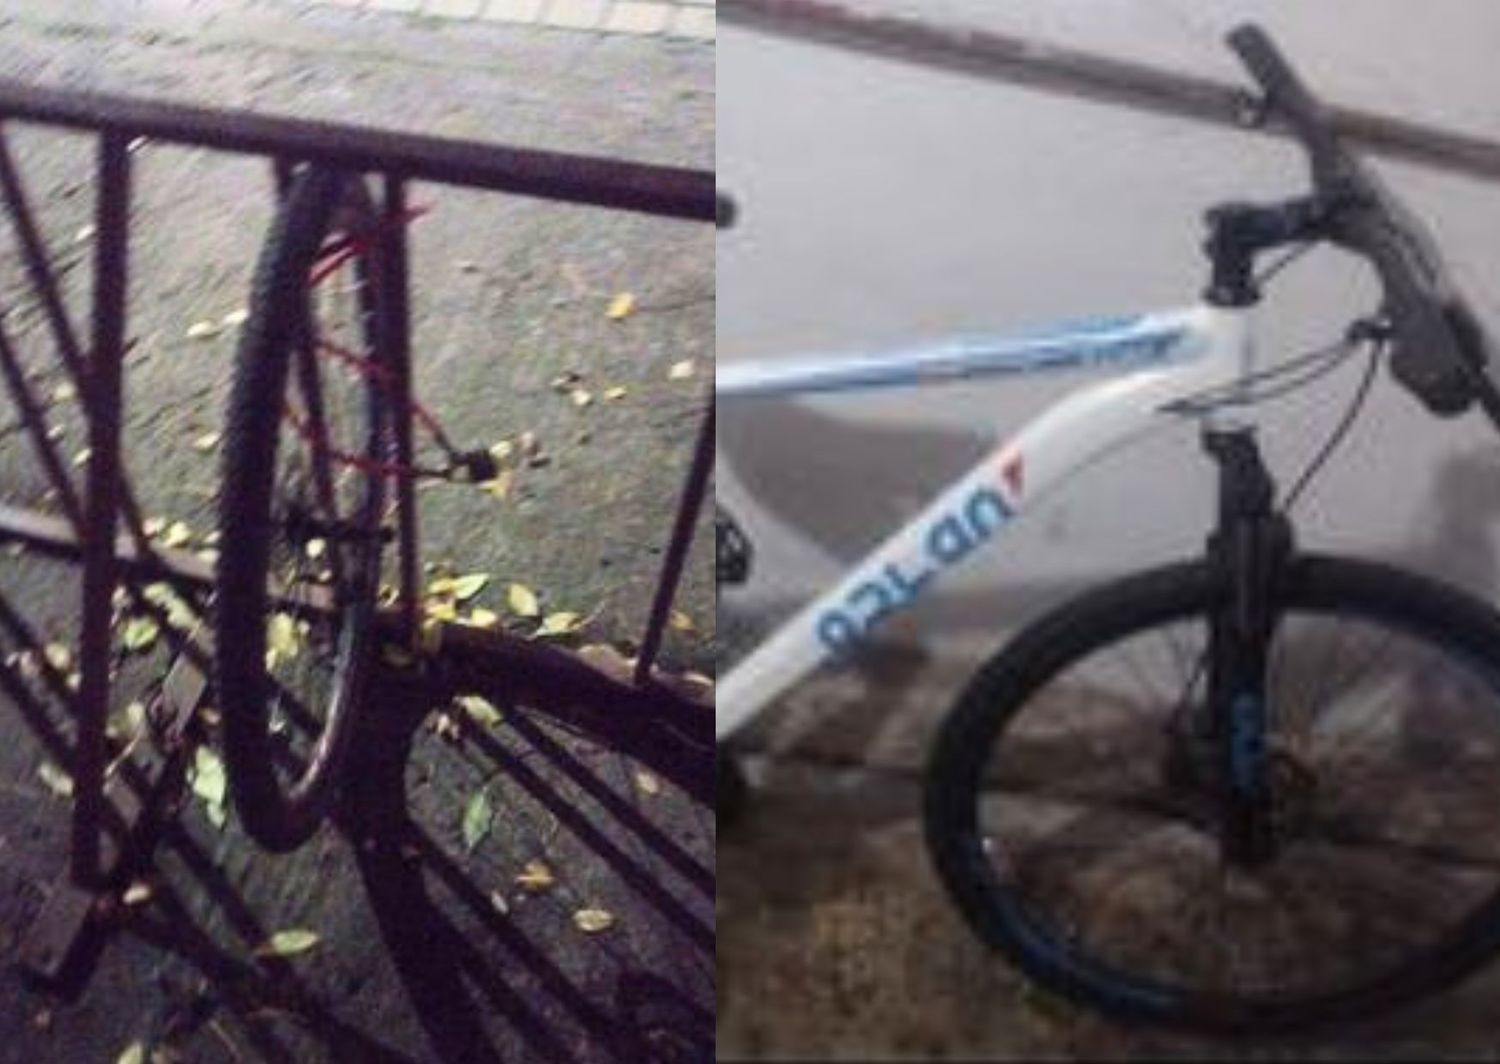 La bicicleta robada es marca Odlan y el dueño busca poder recuperarla. "La denuncia ya está hecha, pero cualquier dato sirve", escribieron a La Opinión.